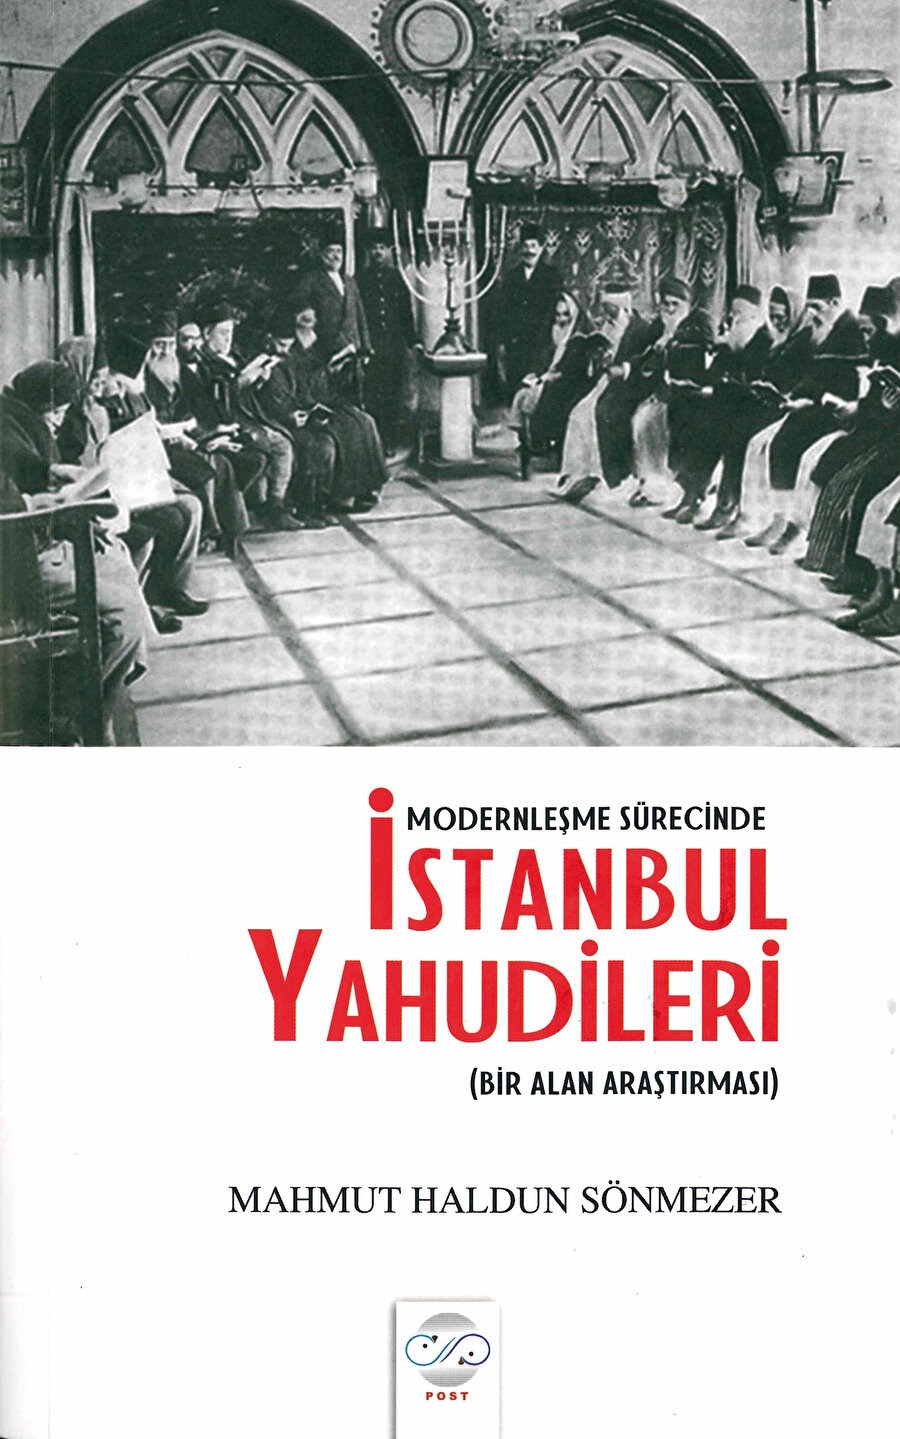 Mahmut Haldun Sönmezer, Modernleşme Sürecinde İstanbul Yahudileri